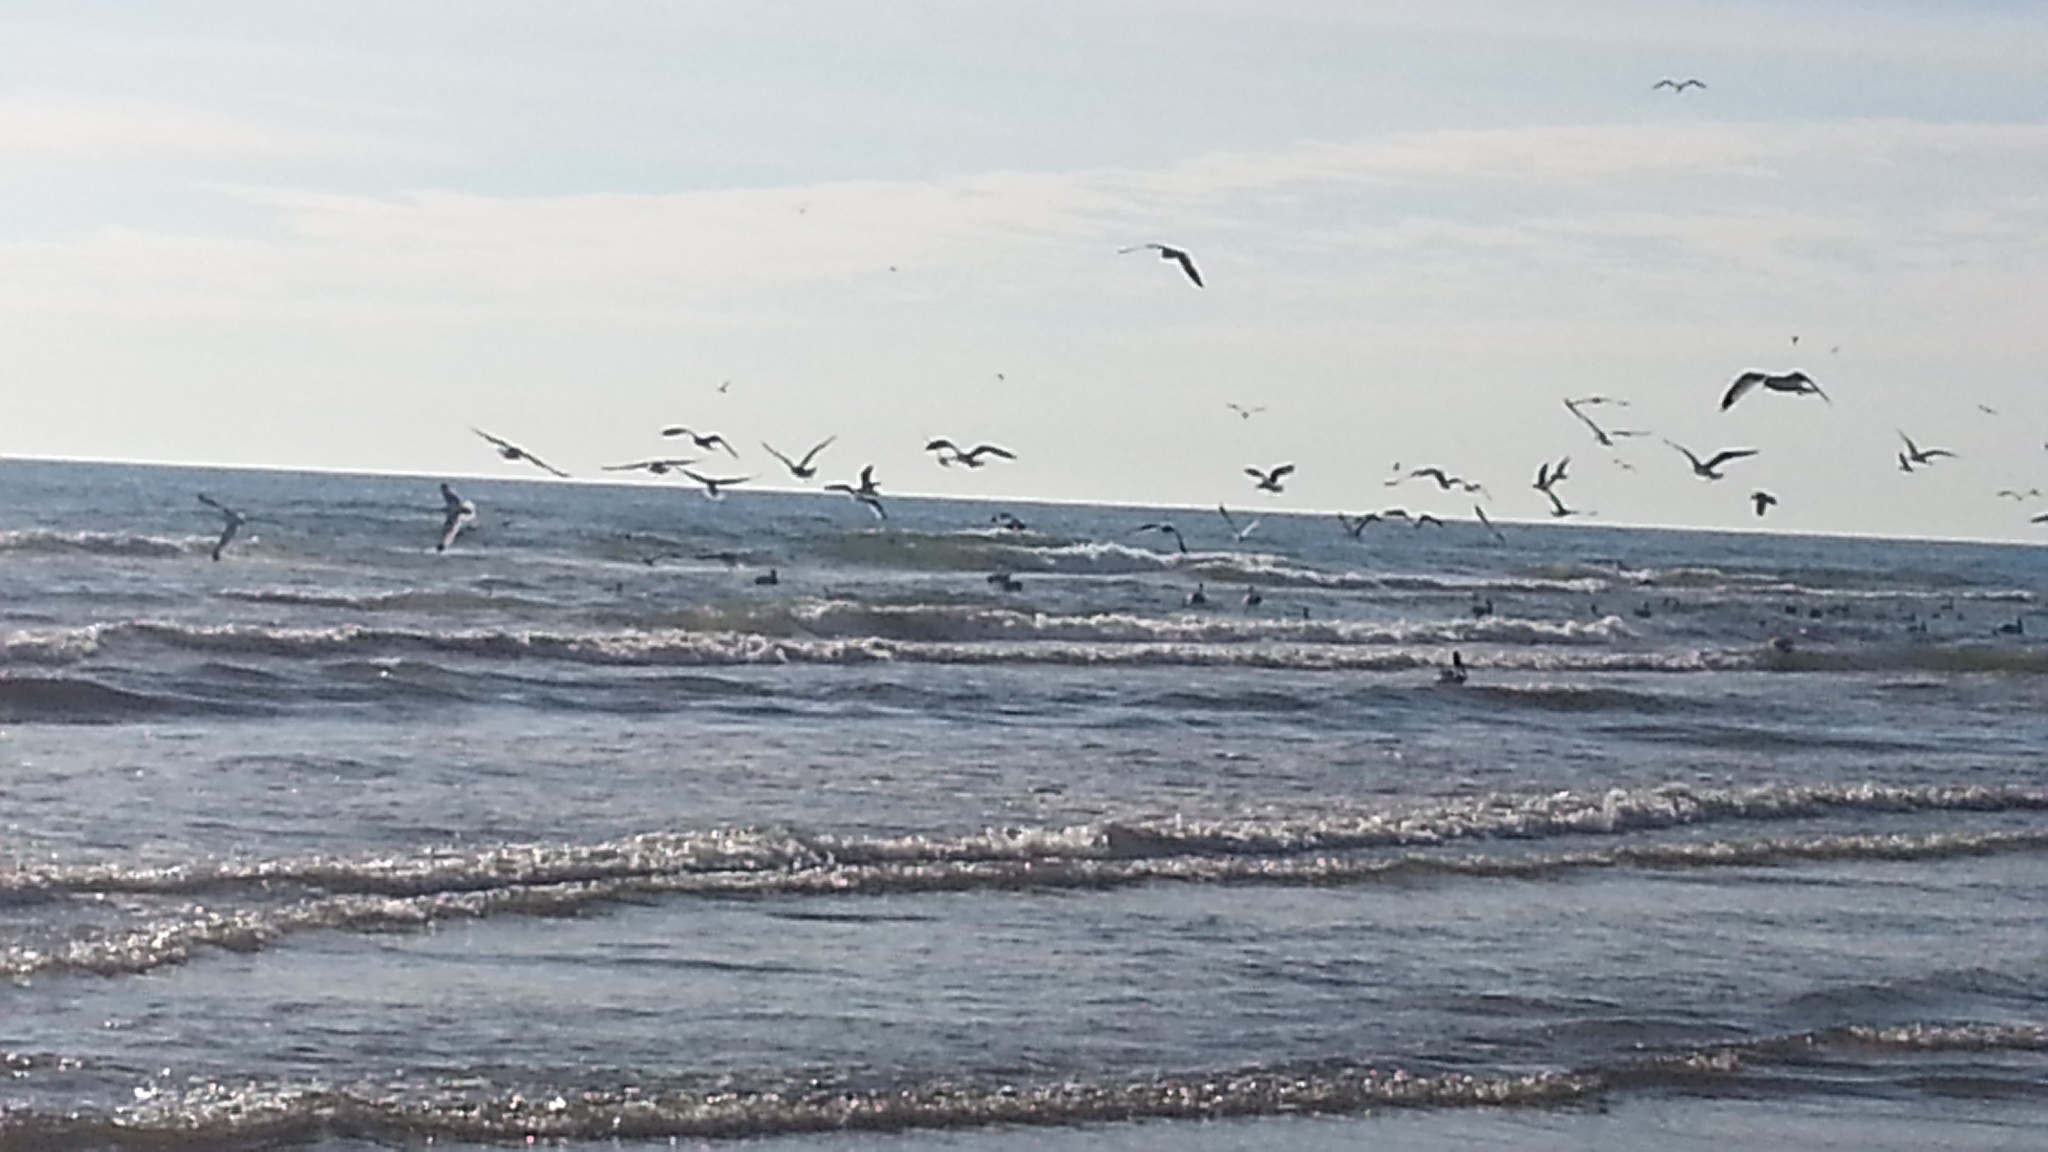 sea gulls feeding on a school of bait fish in the surf
